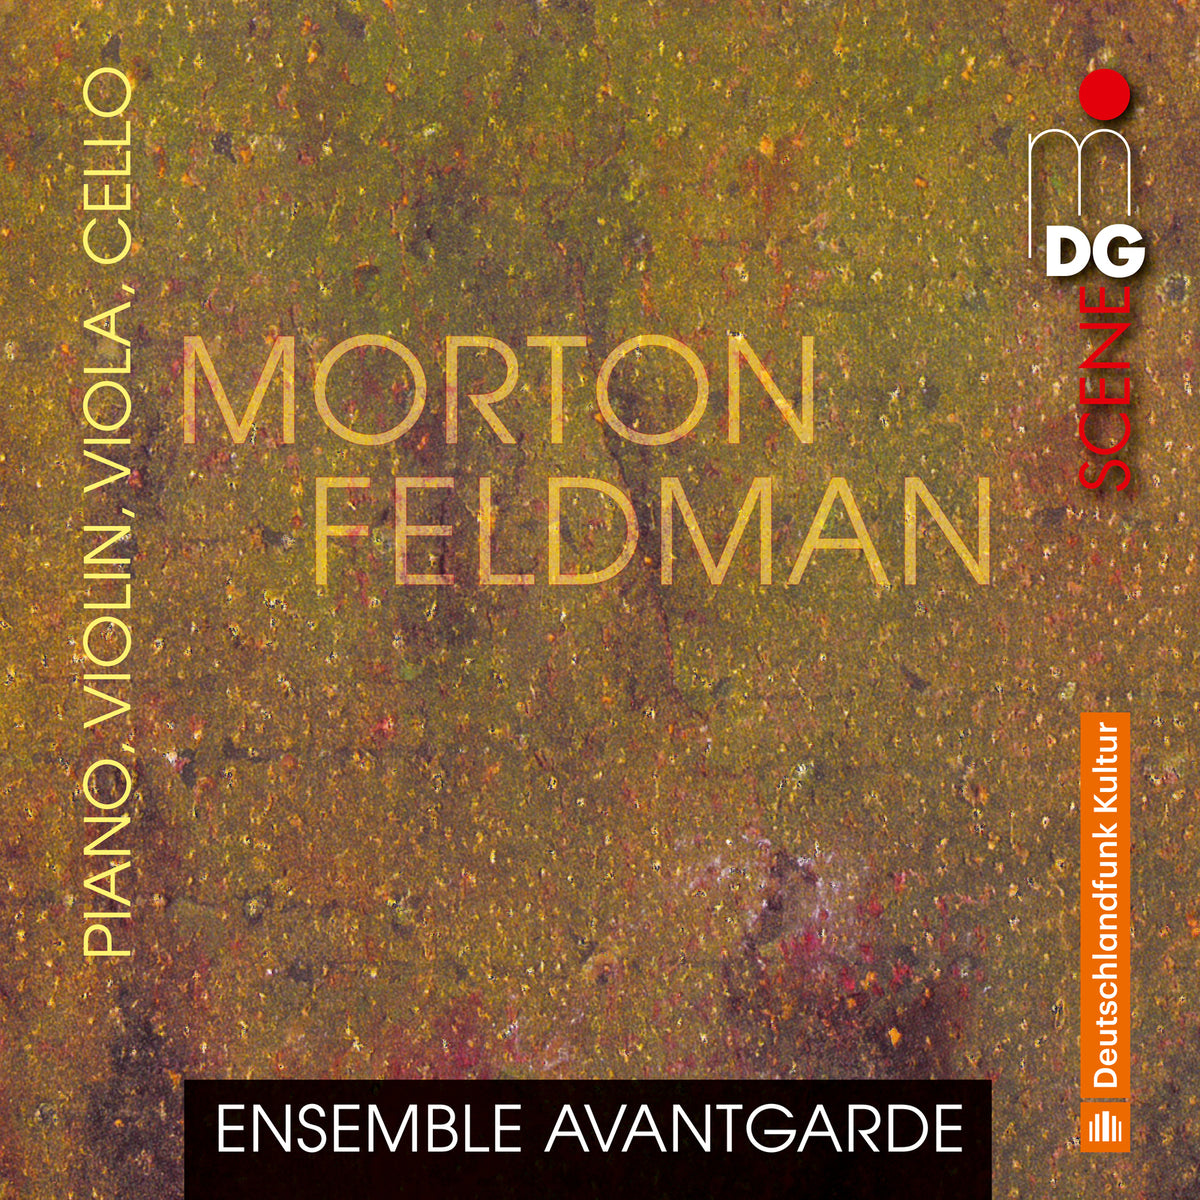 Ensemble Avantgarde - Morton Feldman: Piano, Violin, Viola, Cello - MDG61323092